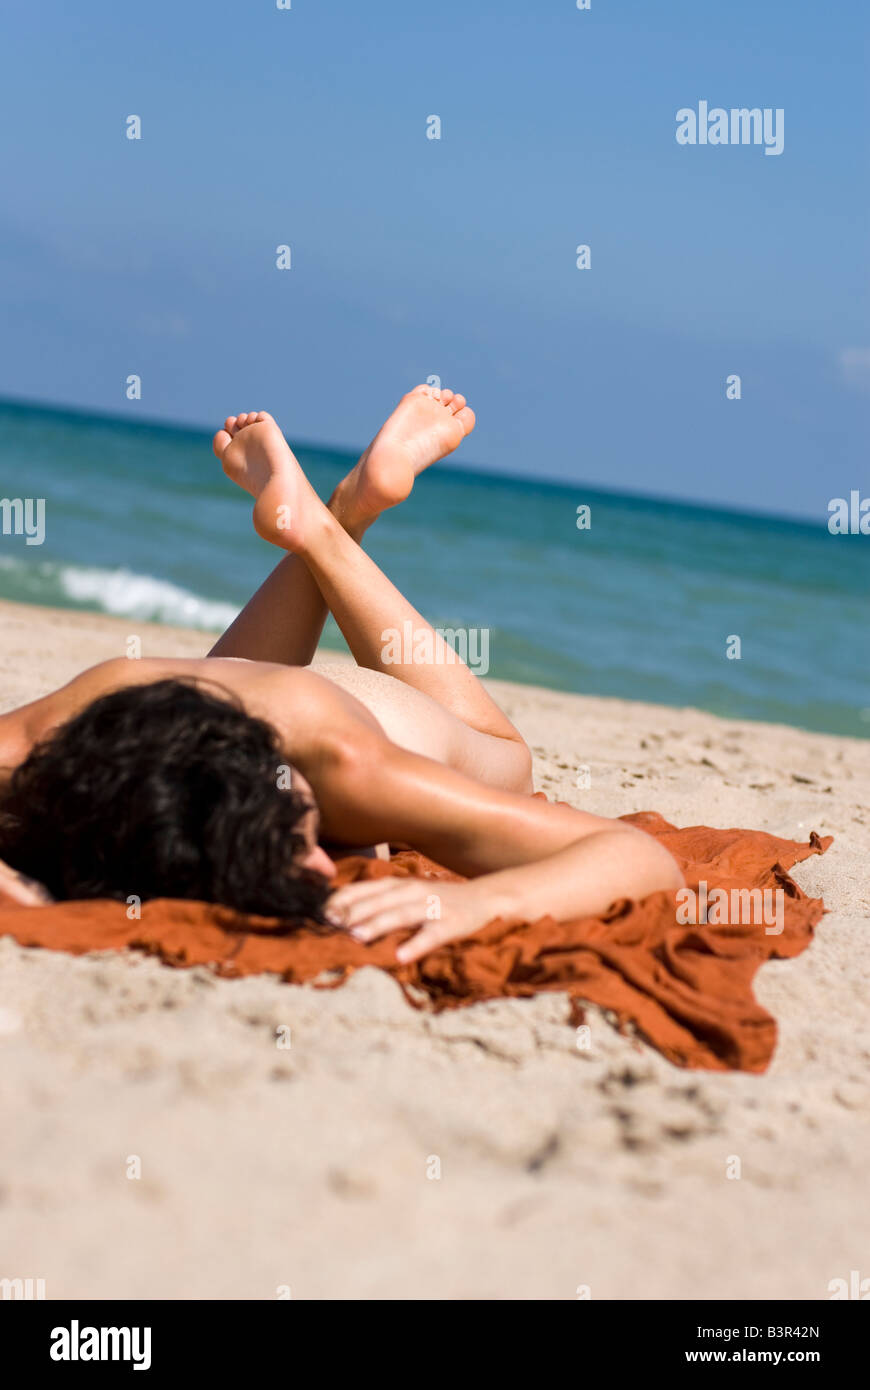 Nude Sunbather Pics 73